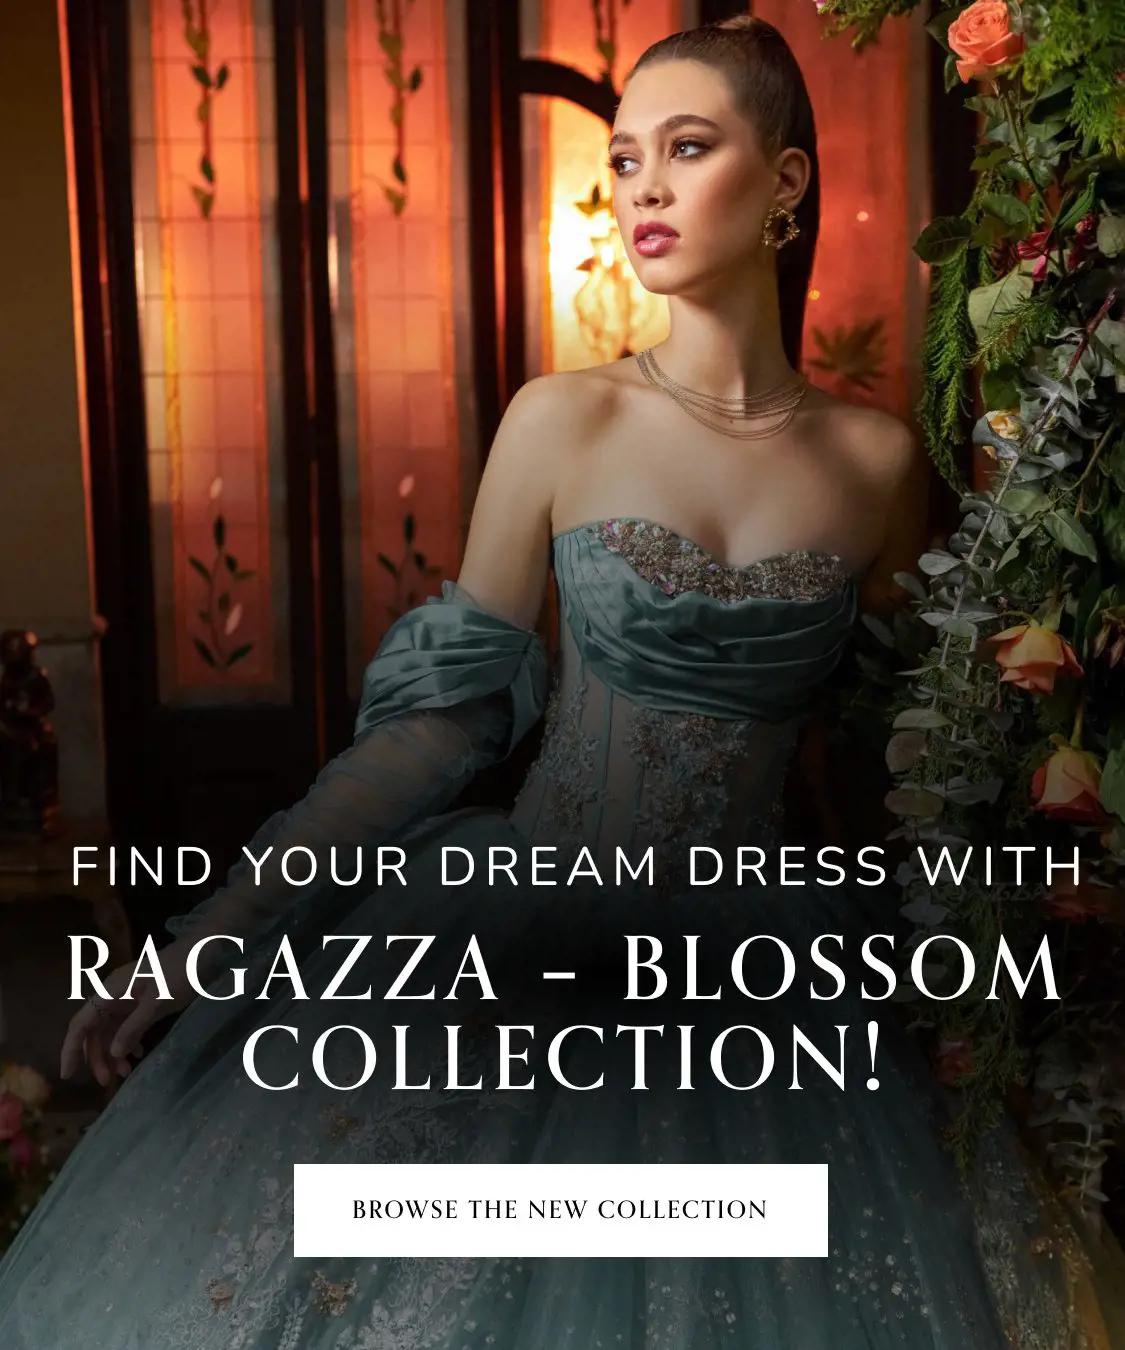 Ragazza Blossom Collection